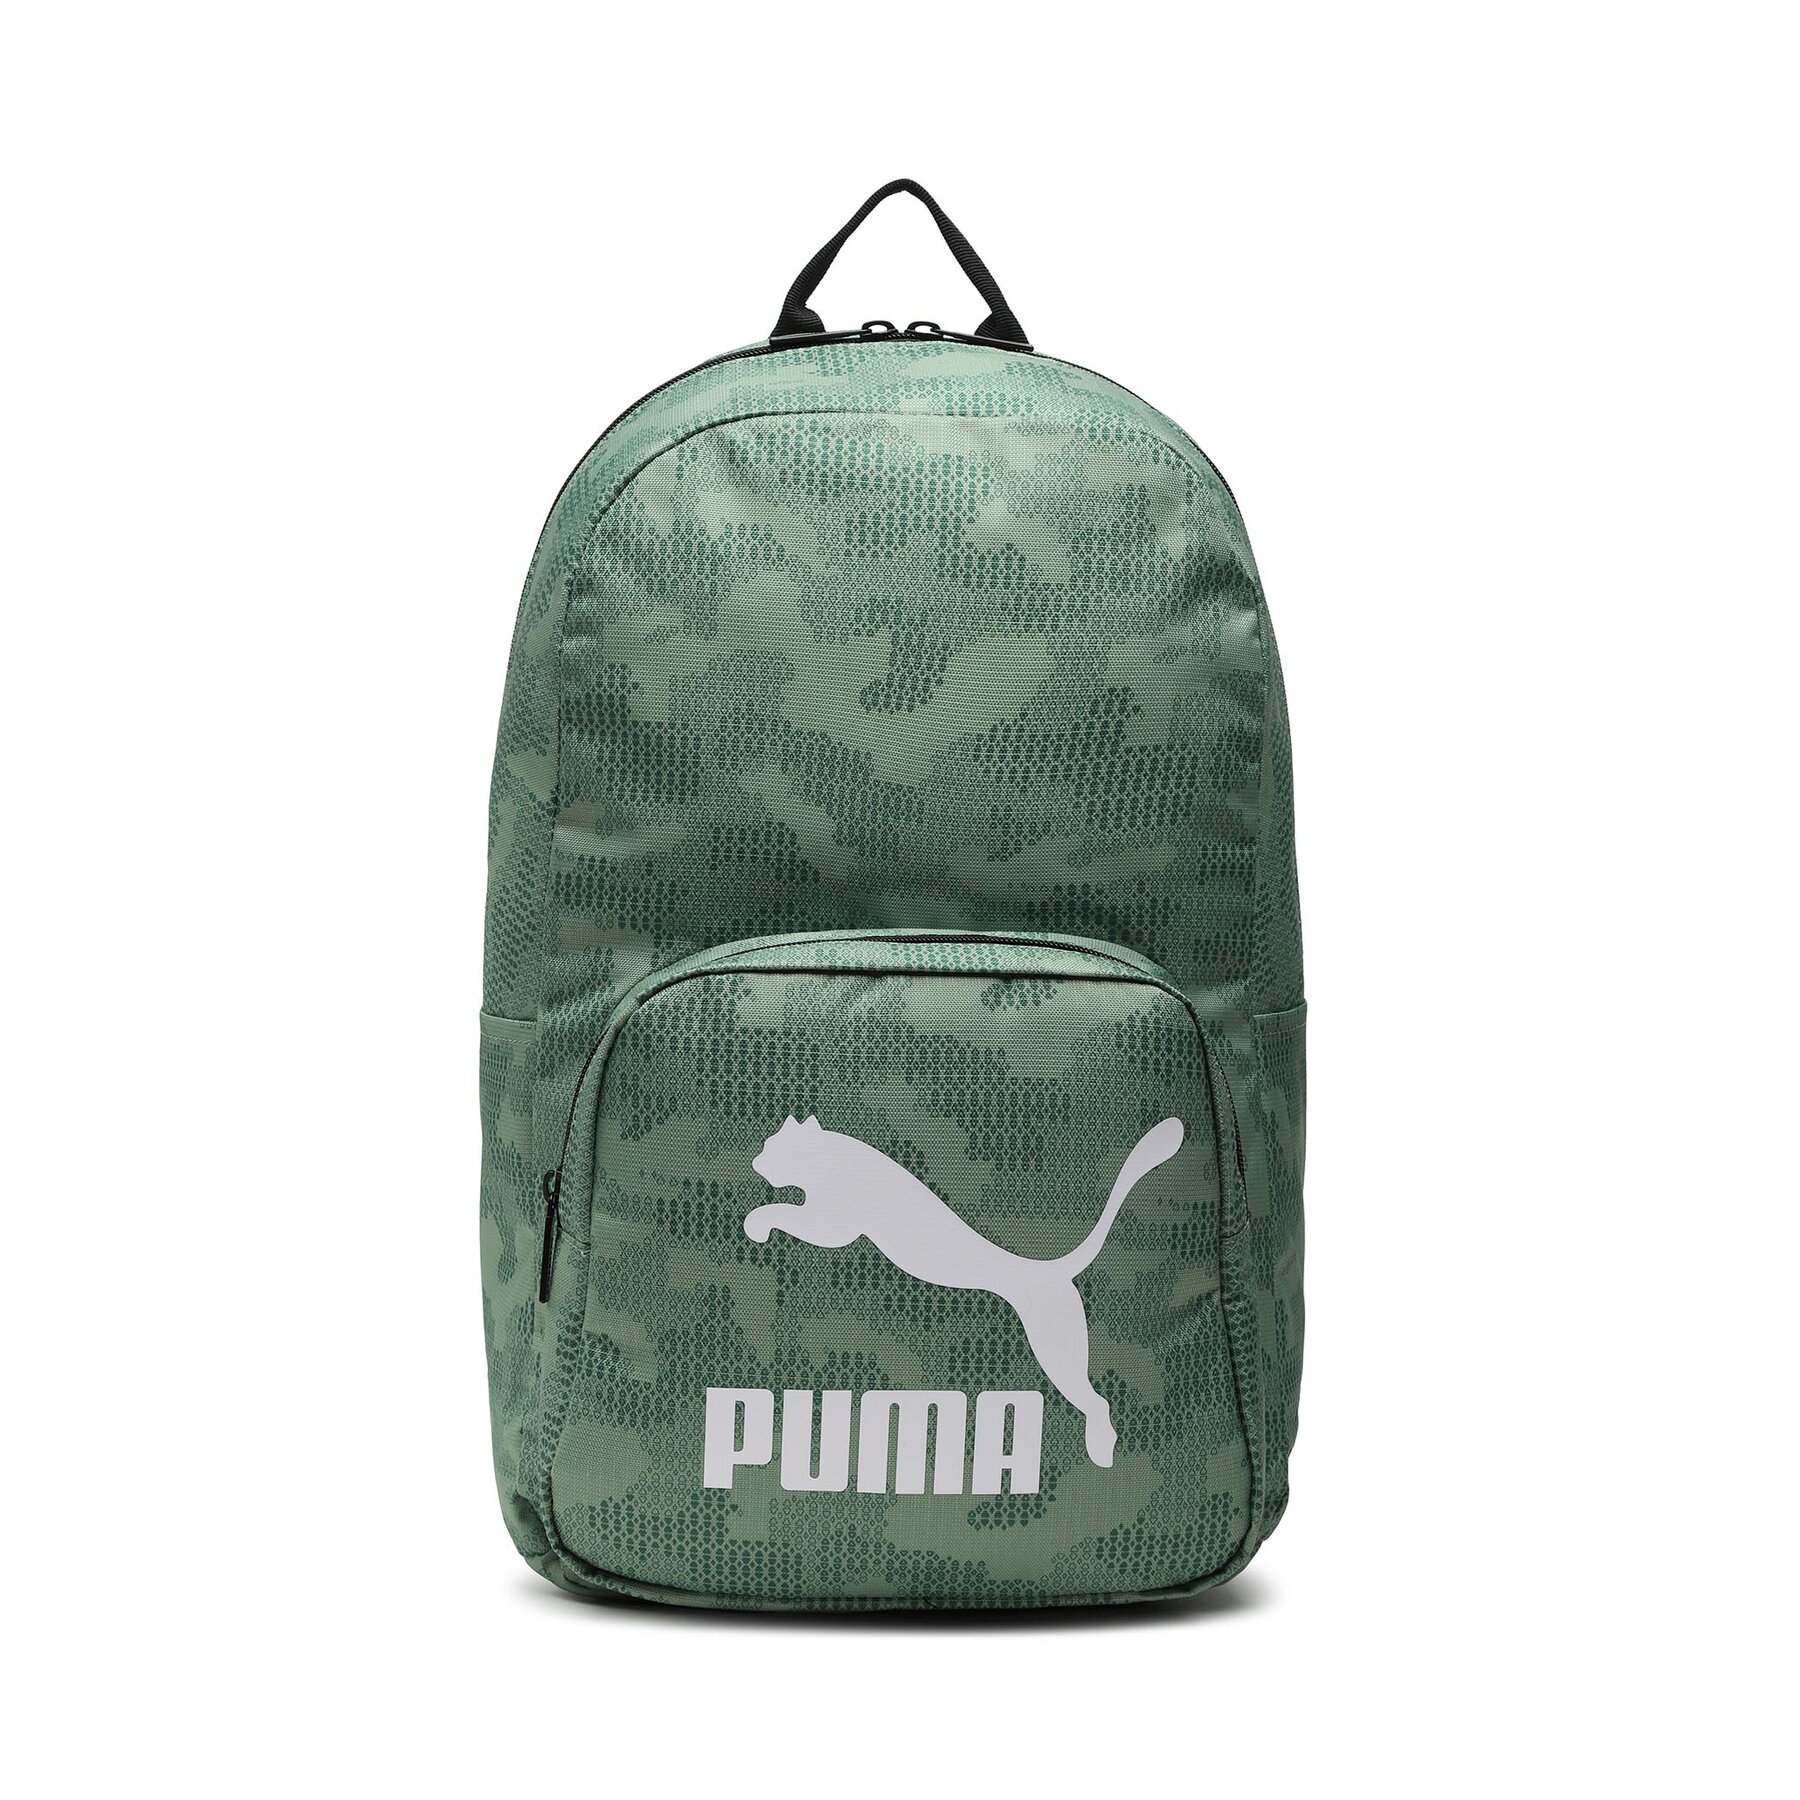 Rucksack Puma Classics Archive Backpack 079651 04 Vine/Aop von Puma